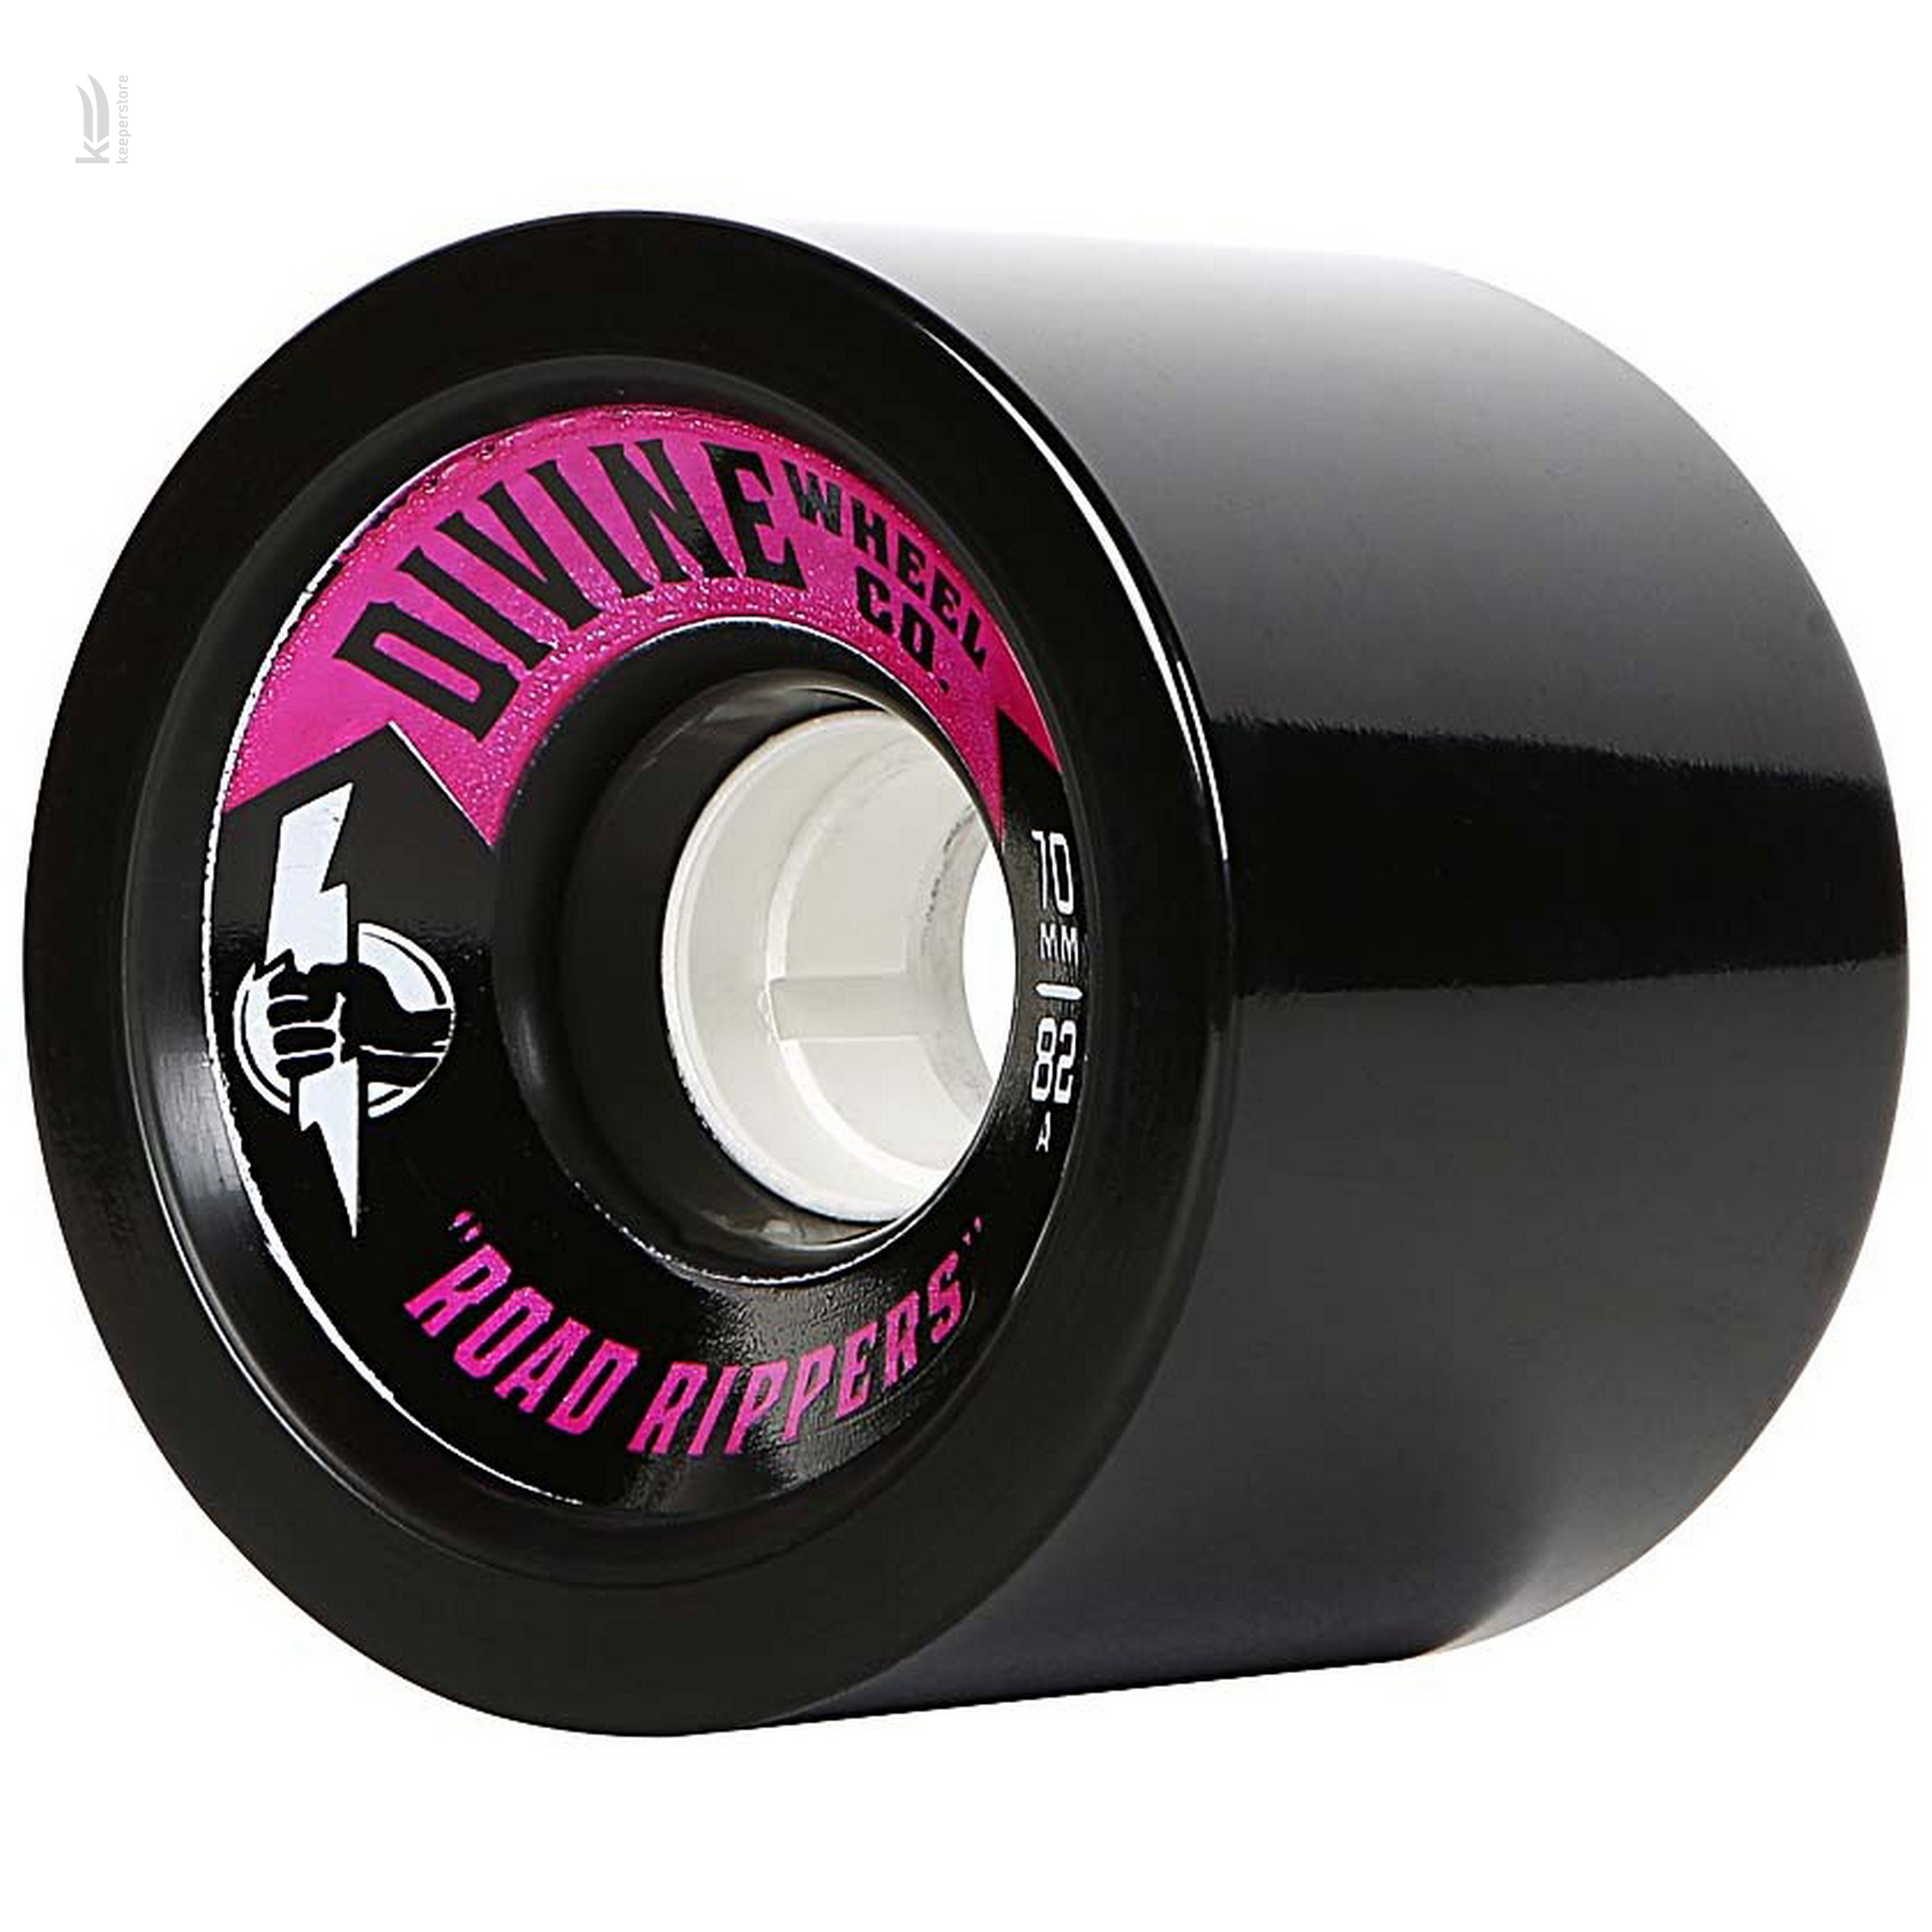 Характеристики колесо для скейта и лонгборда Divine Road Rippers Black 70Мм/82A